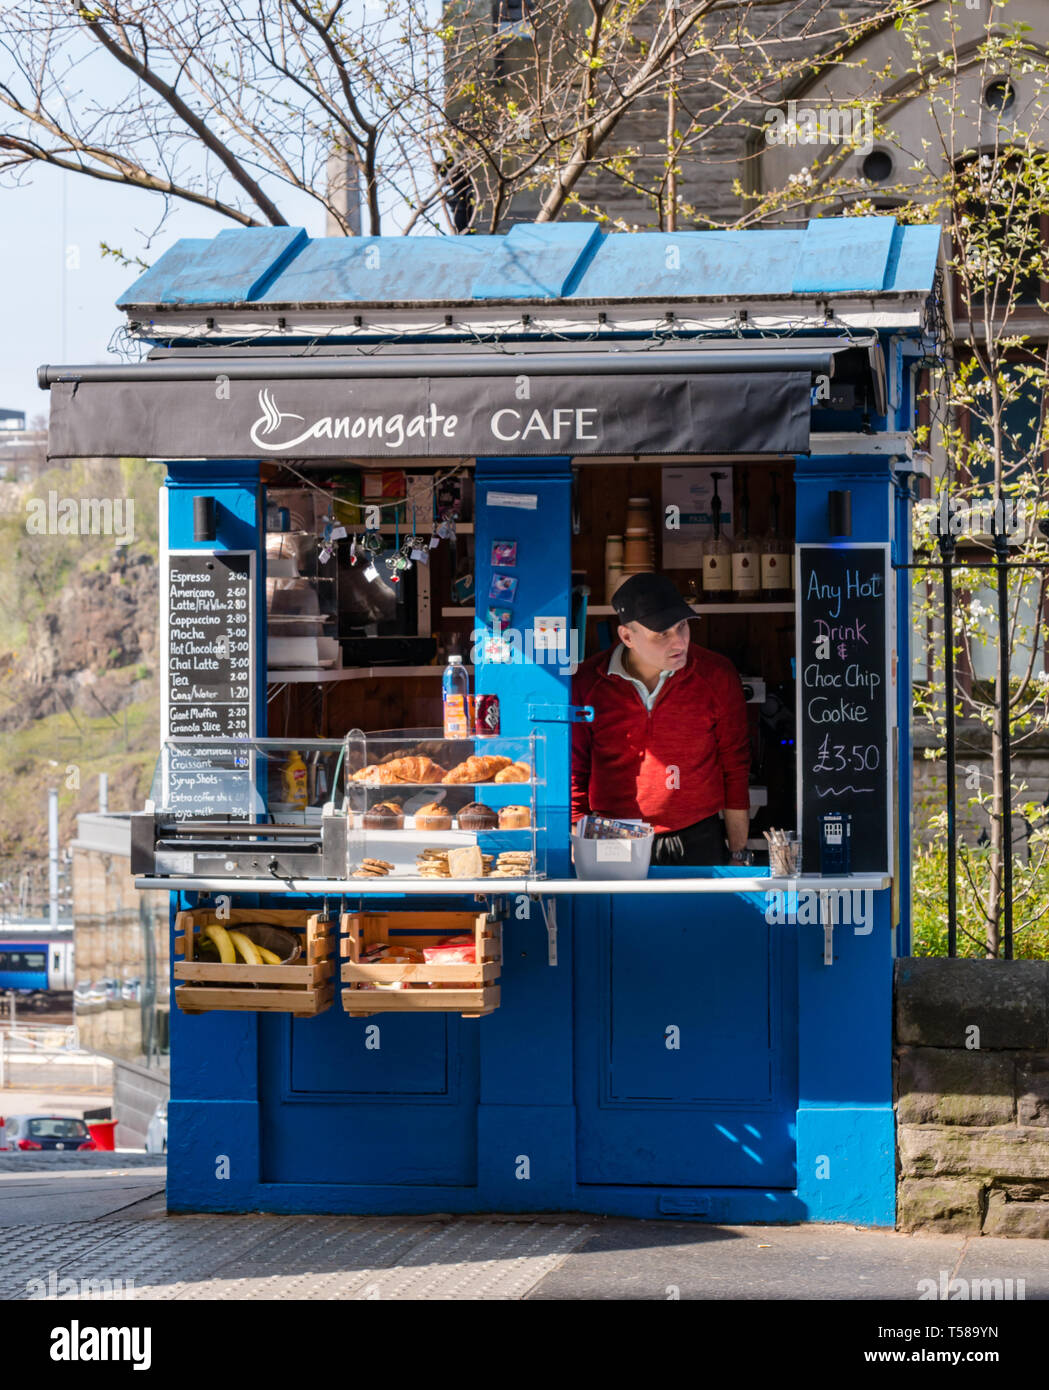 Alte Polizei rufen, umgewandelt zu Kaffee zum Mitnehmen ausgeht, Carl's Cafe, Royal Mile, Edinburgh, Schottland, Großbritannien mit Inhaber auf der Suche nach Kunden Stockfoto